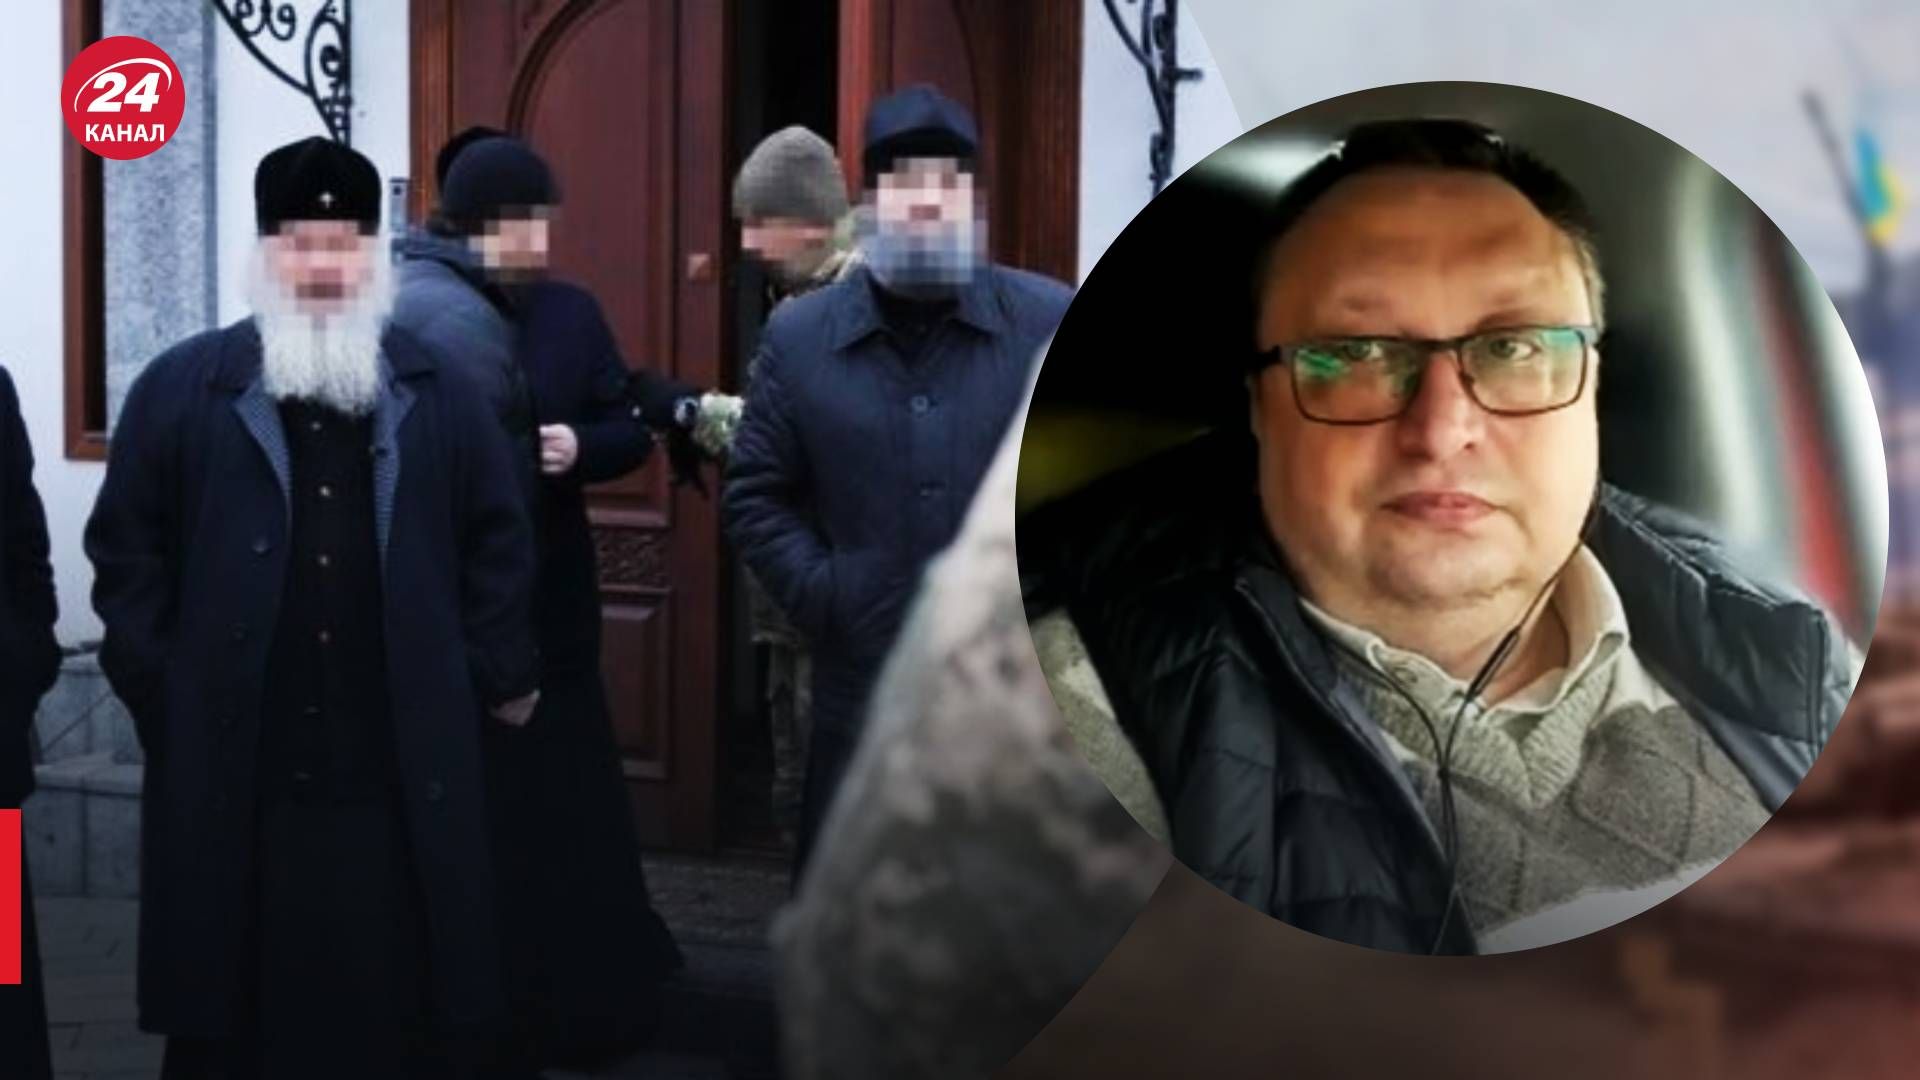 Скандали навколо московського патріархату в Києво-Печерській лаврі - 24 Канал